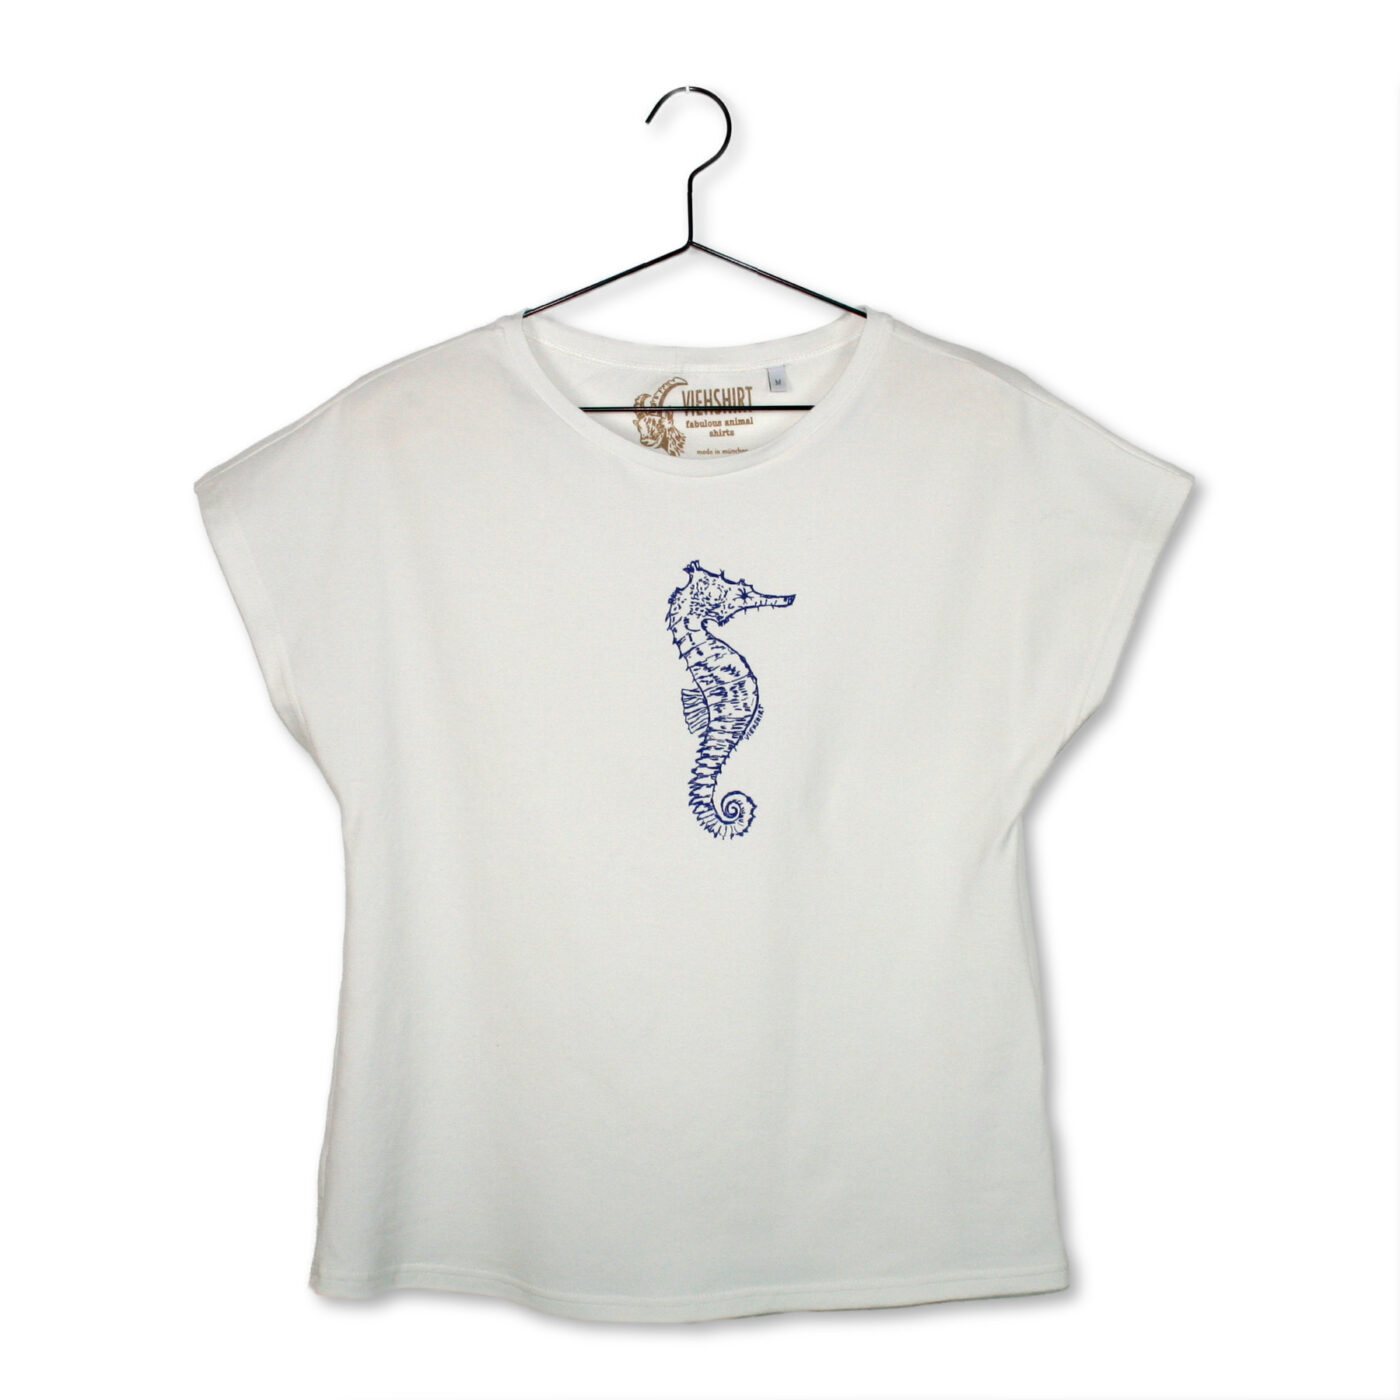 Weißes T-Shirt mit Siebdruckmotiv Seepferdchen